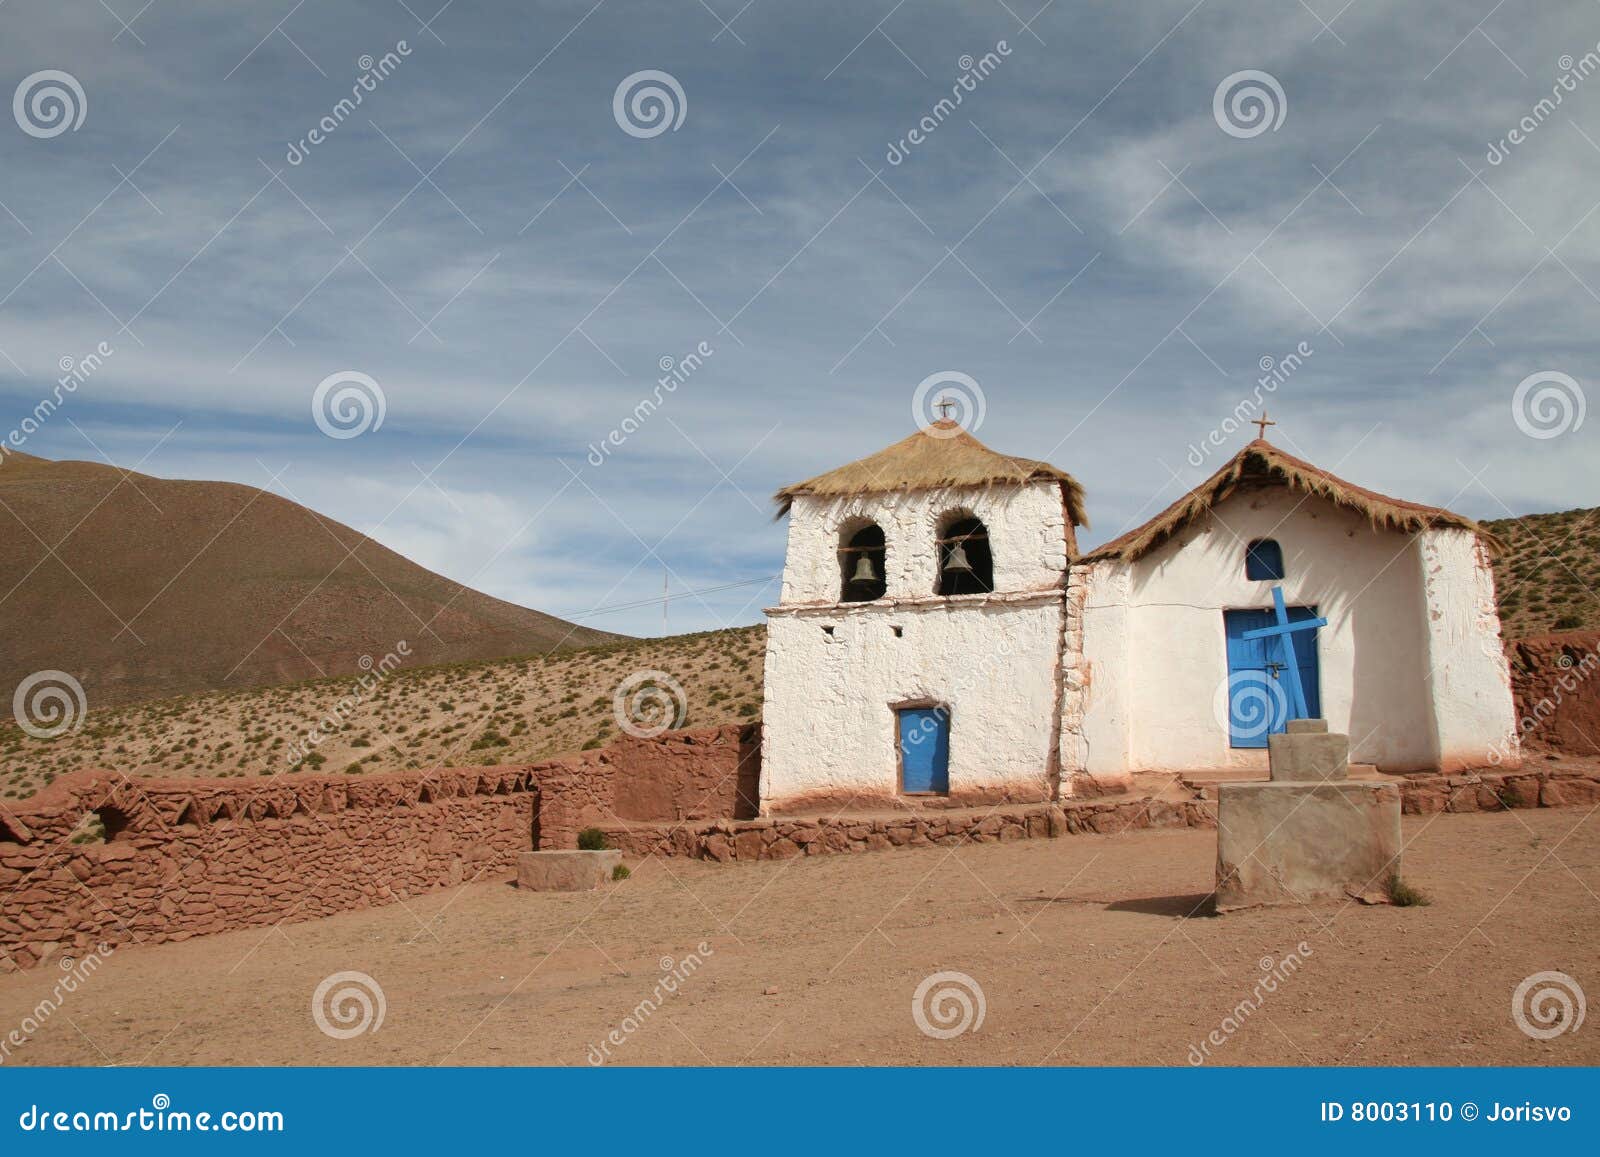 altiplano church